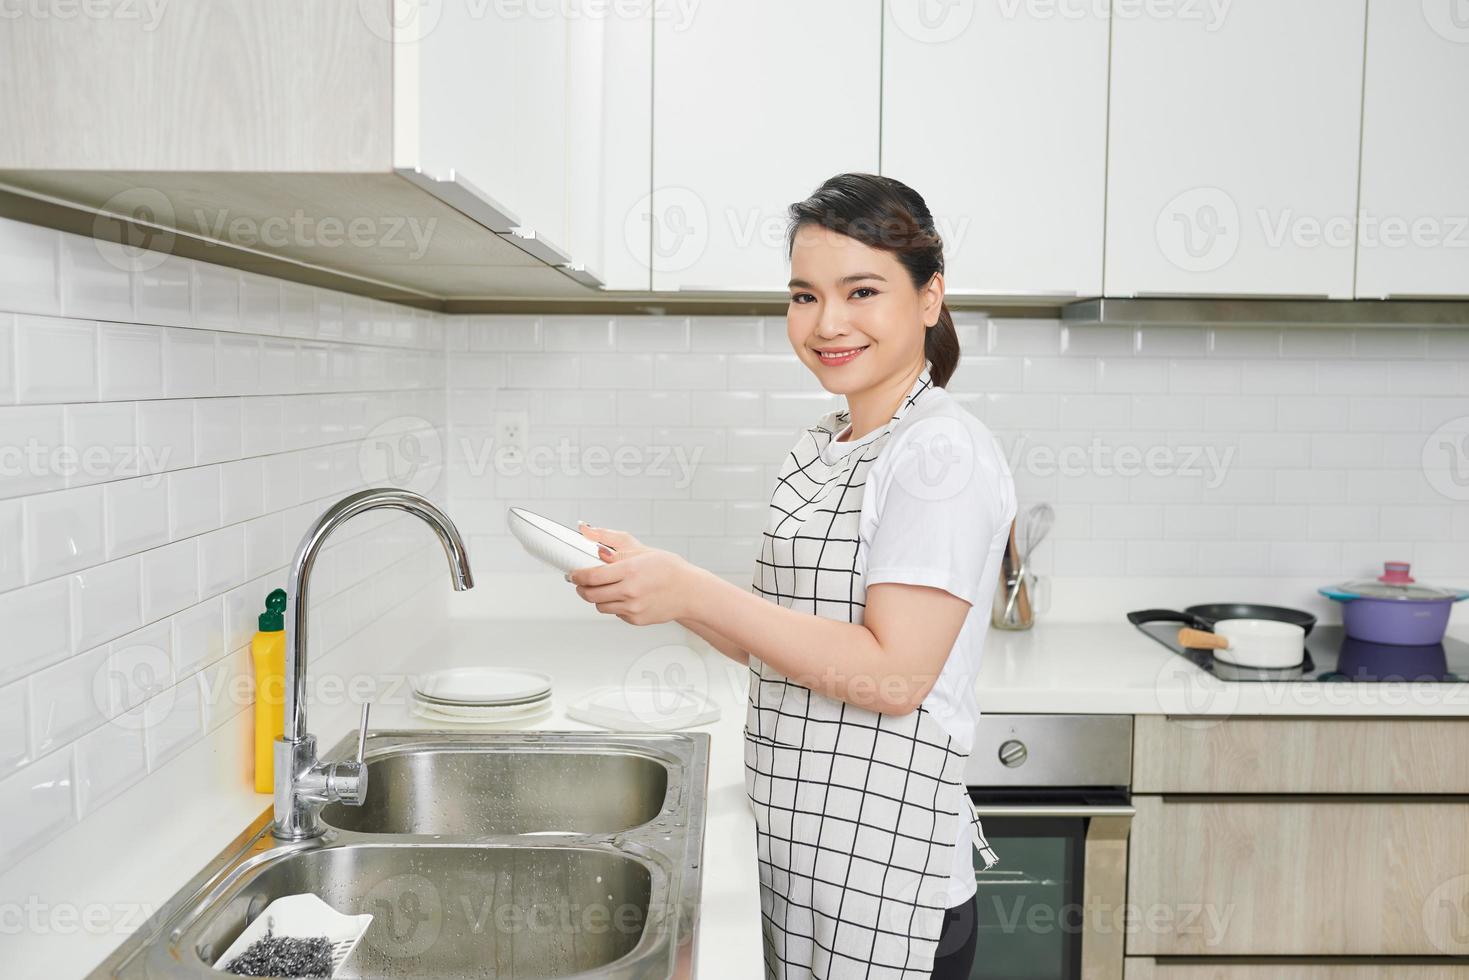 junge Frau spülte das Geschirr in einer Küche foto